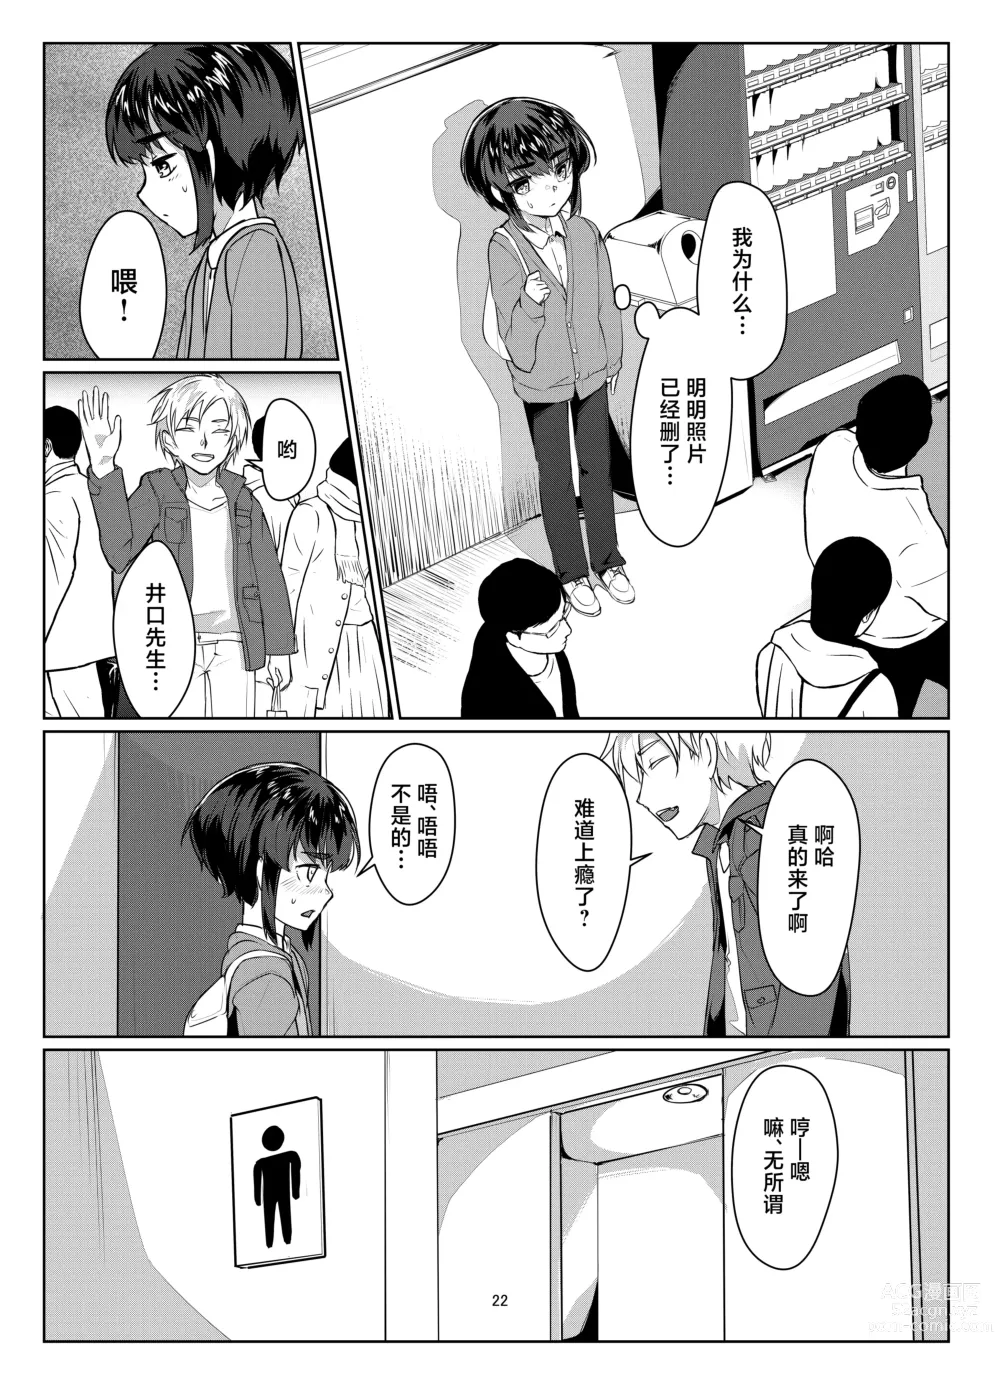 Page 22 of doujinshi Tooi Hinata